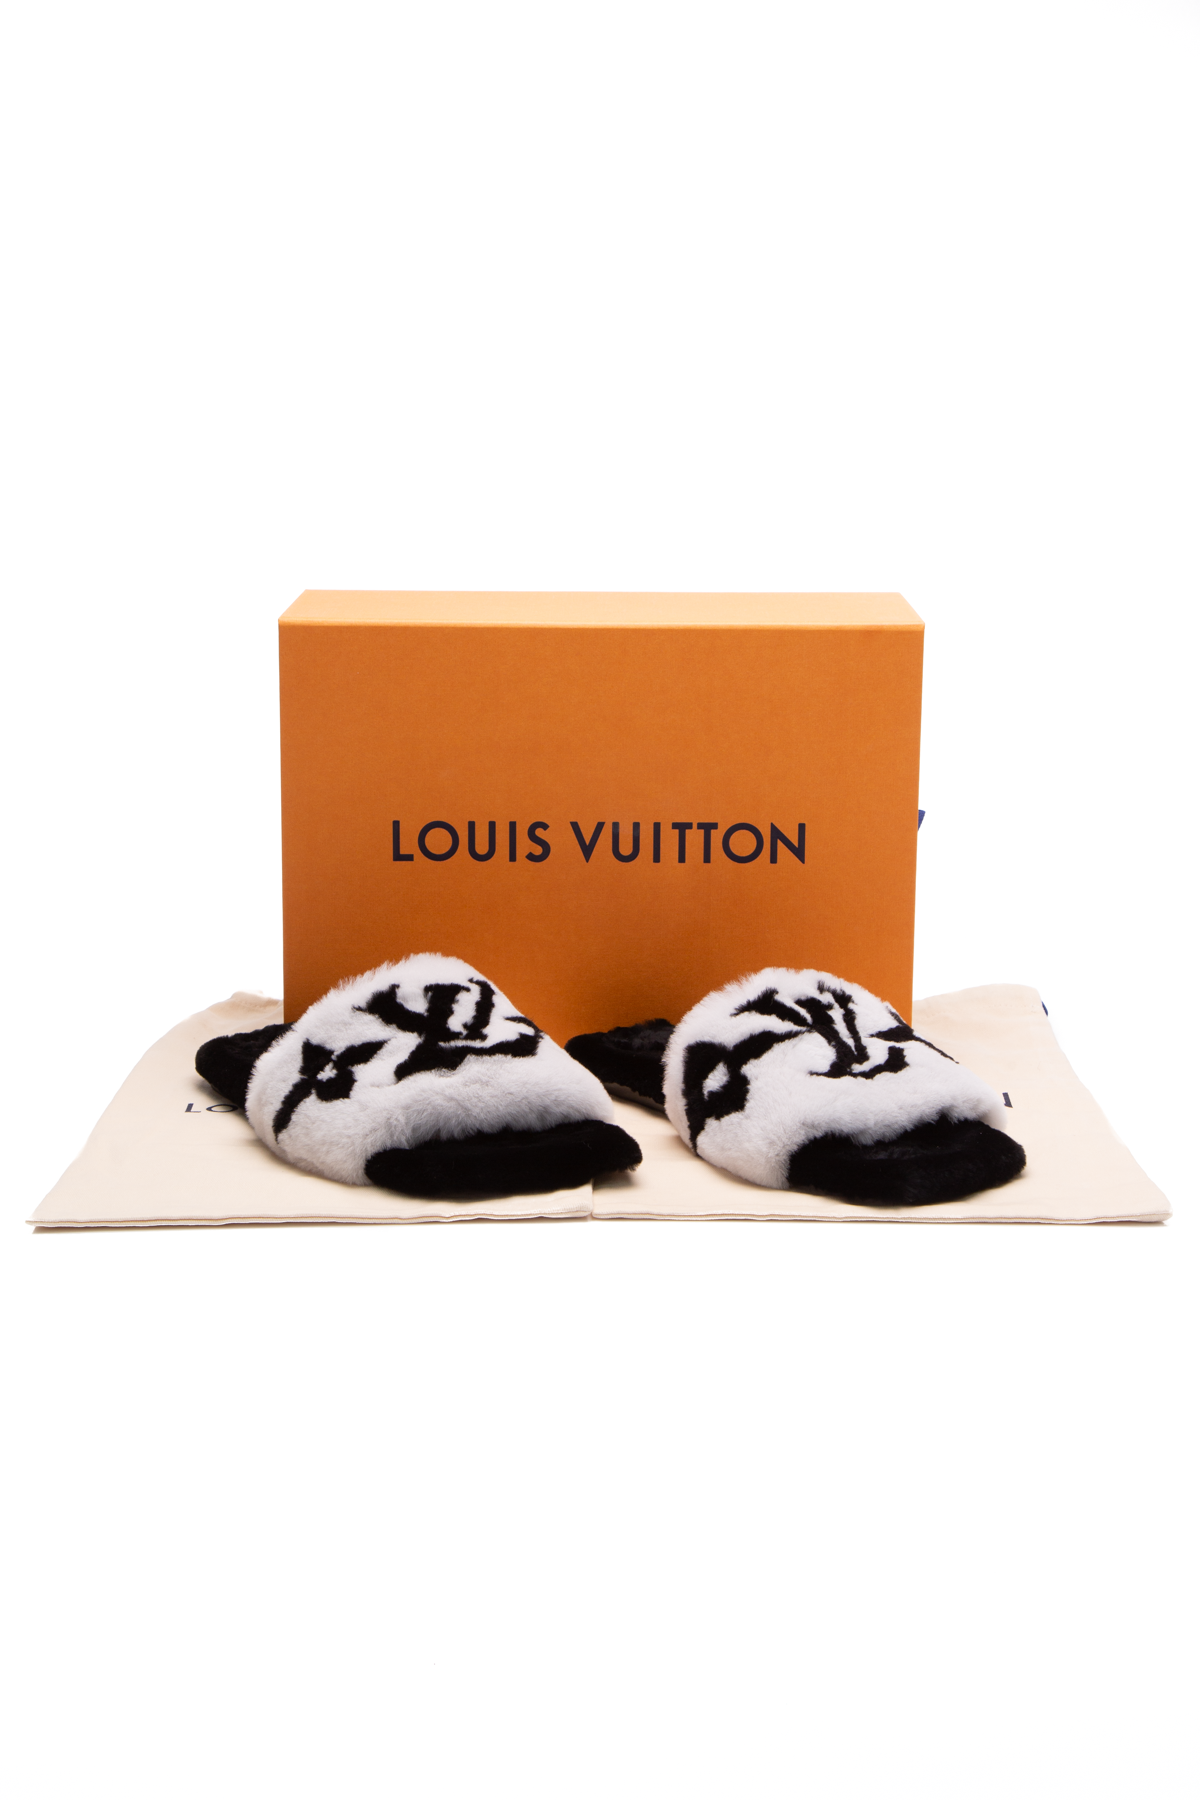 Louis Vuitton, Shoes, Louis Vuitton Fay Flat Mule